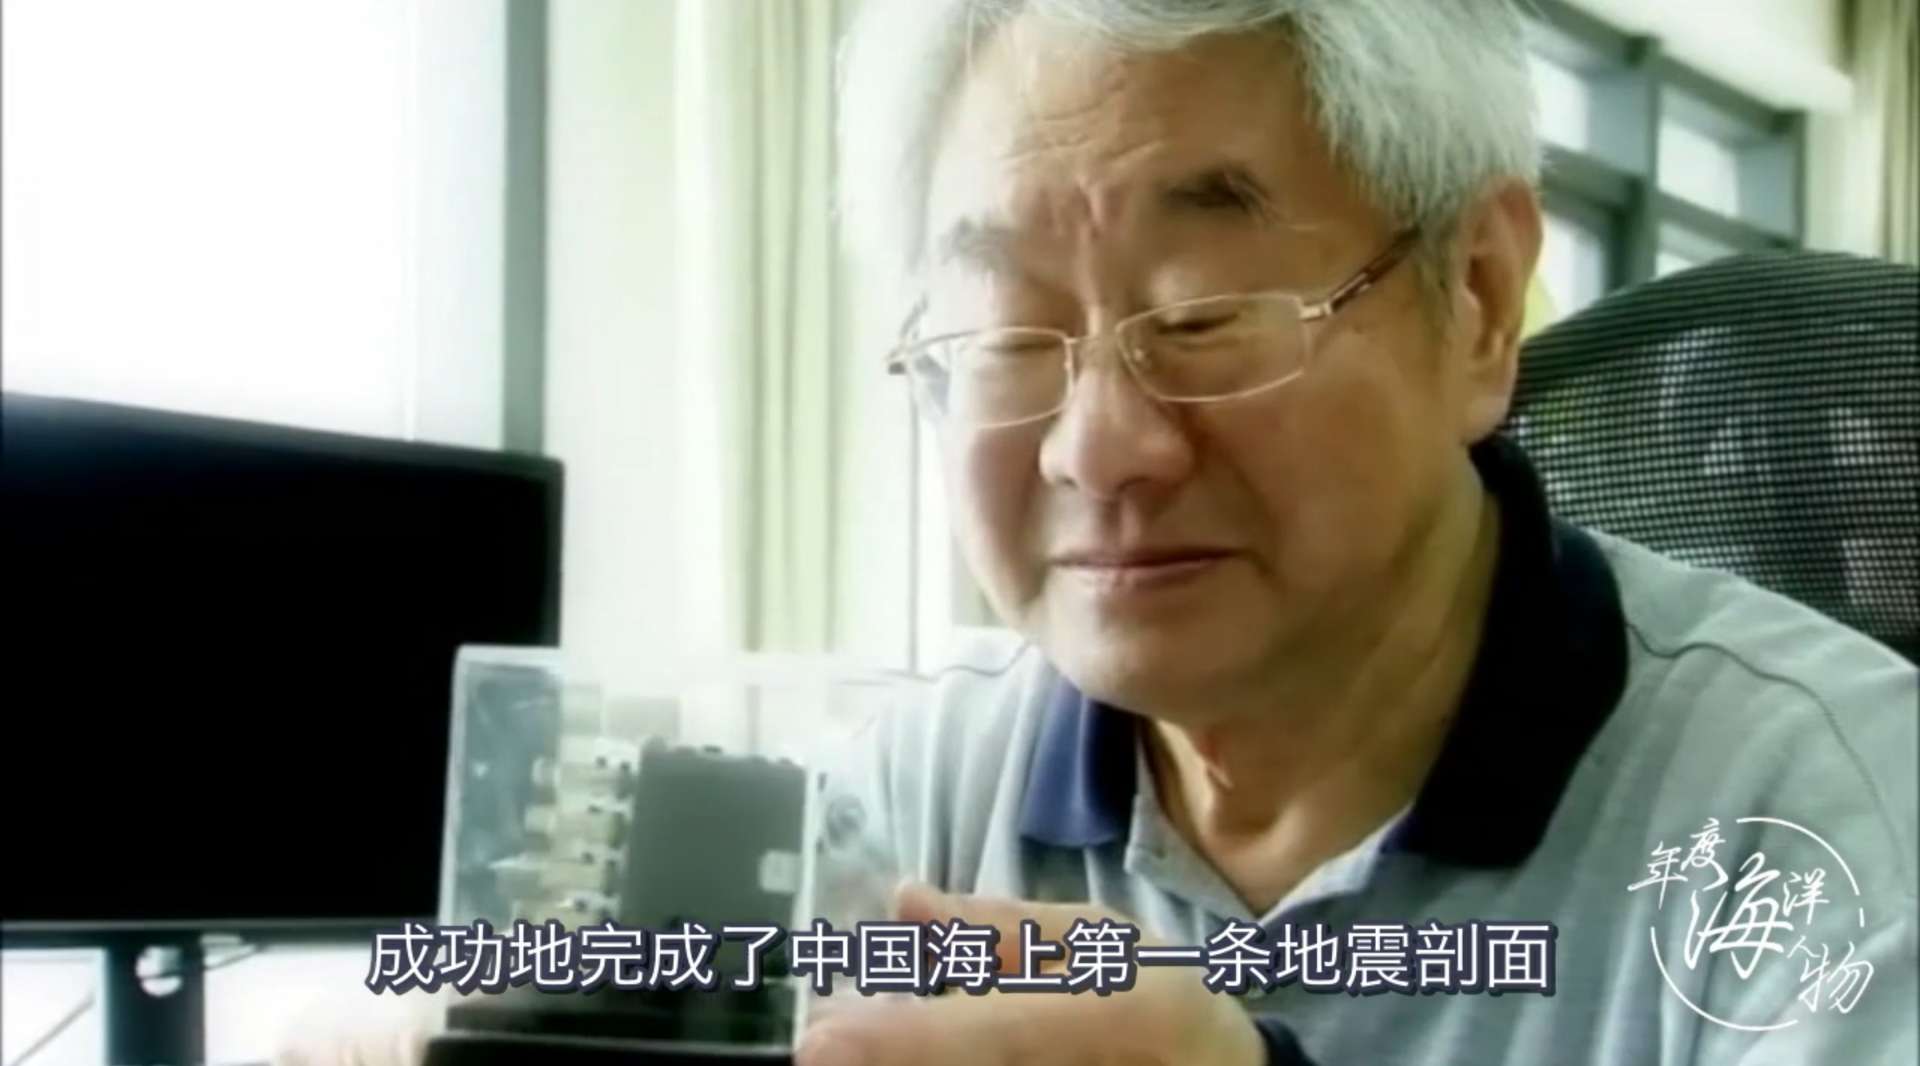 中国工程院典型宣传 海底科学专家——金翔龙